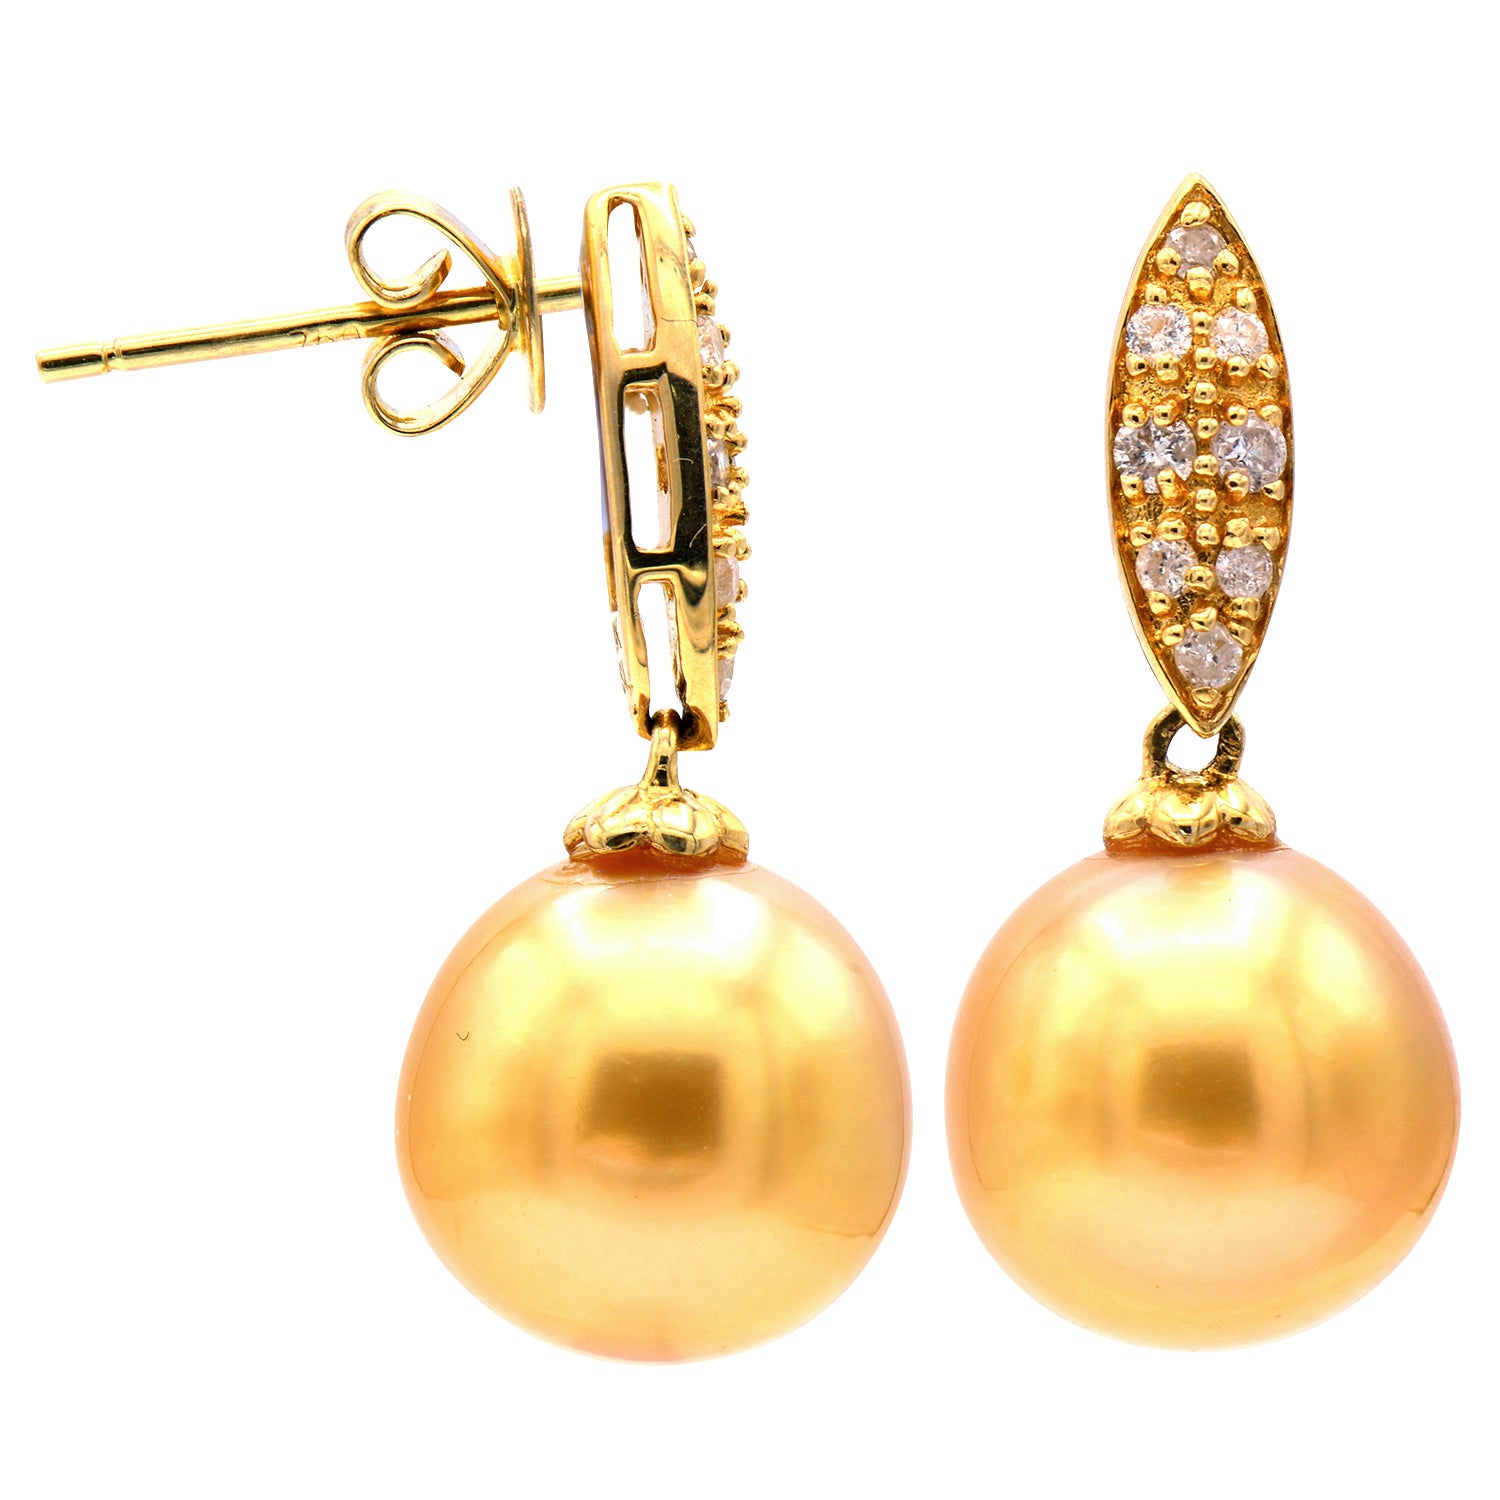 18KY Golden South Sea Pearl Earrings, 9-10mm